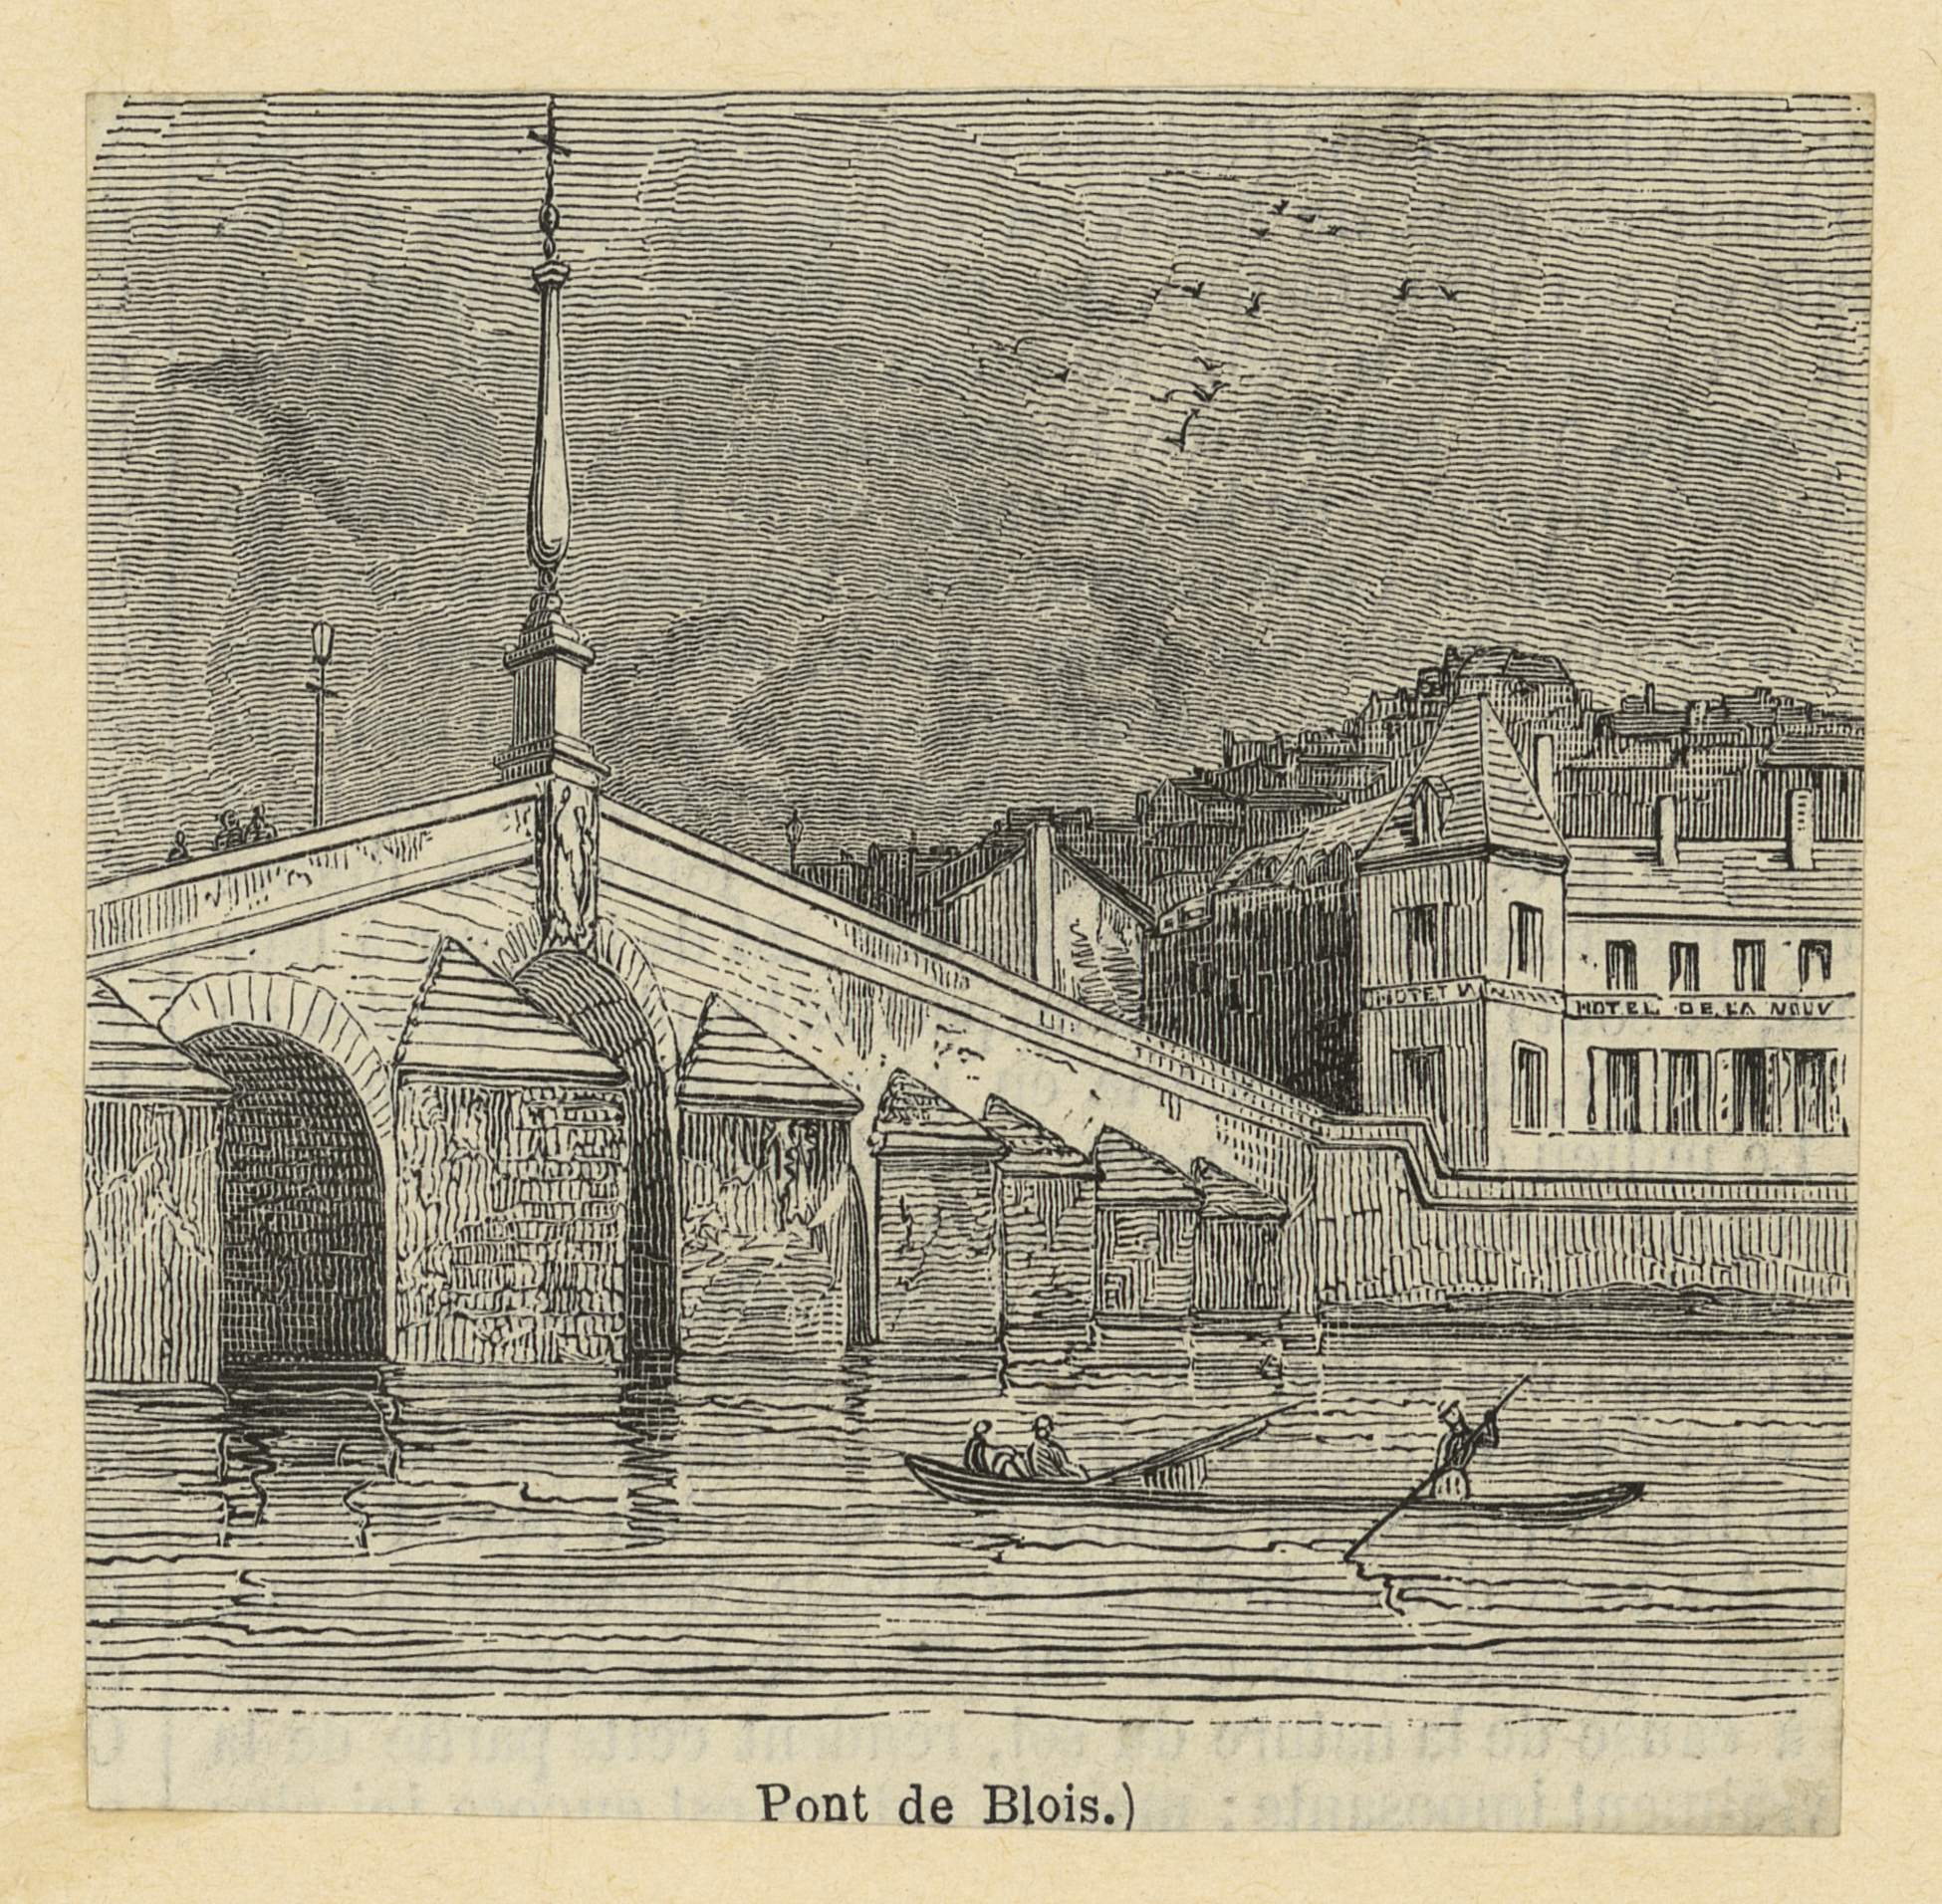 Anonyme, Le pont de Blois, gravure sur bois vers 1870